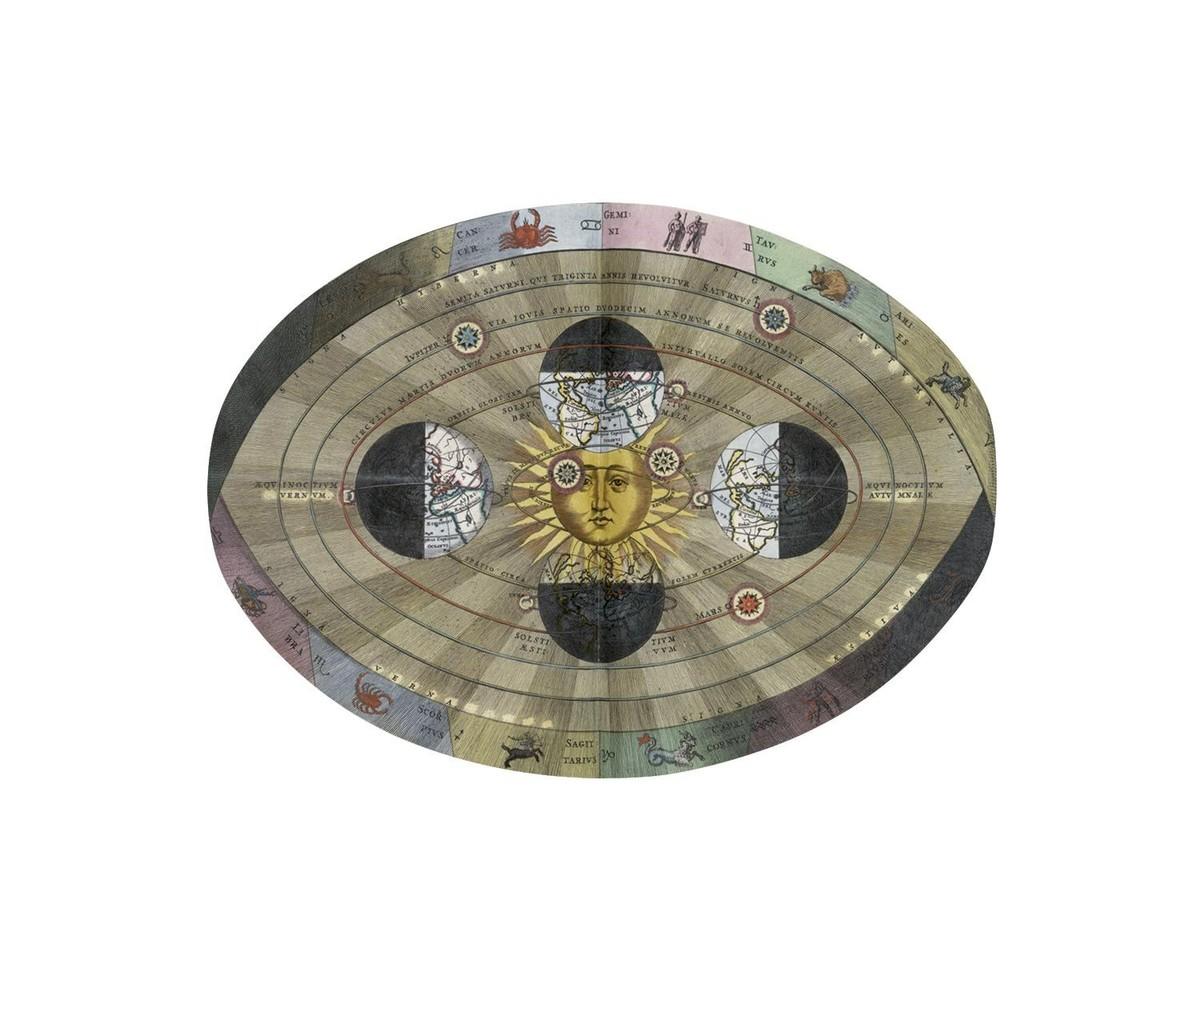 Le système de Copernic